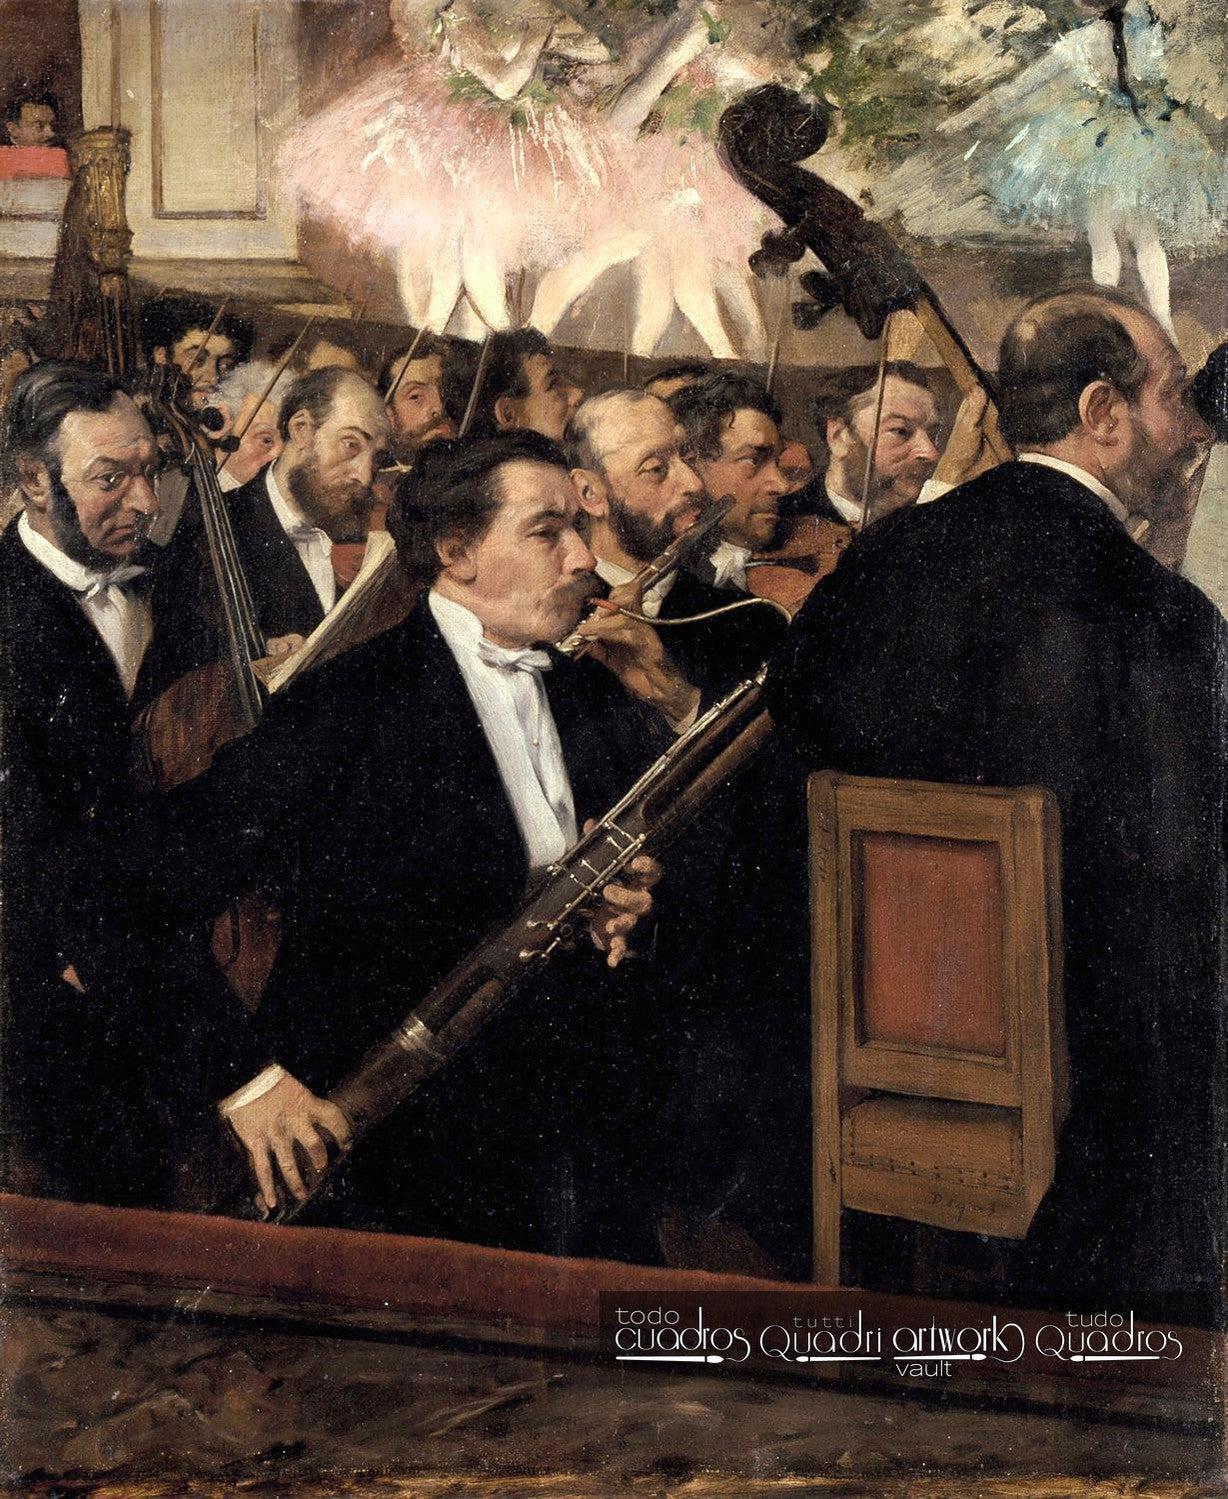 La orquesta en la ópera, Degas